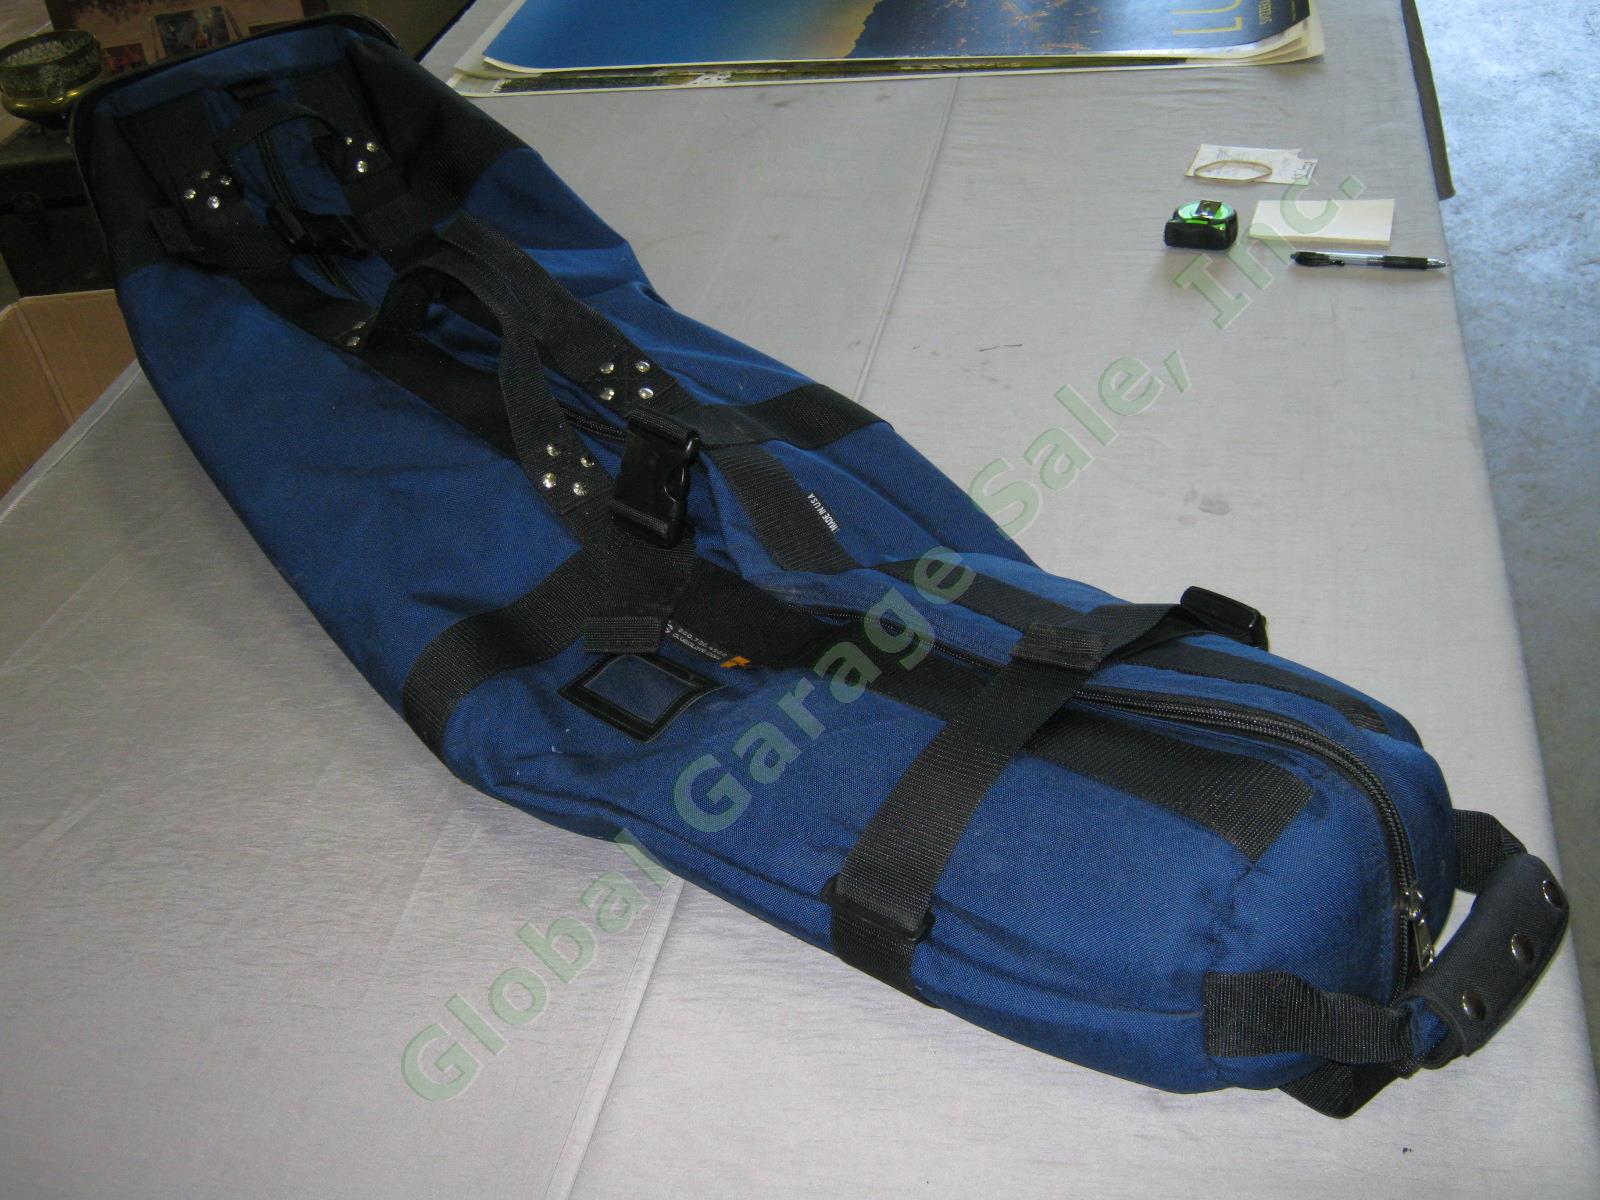 Navy Club Glove Burst Proof Travel Golf Club Bag With Wheels 2 II Free Stiff Arm 2